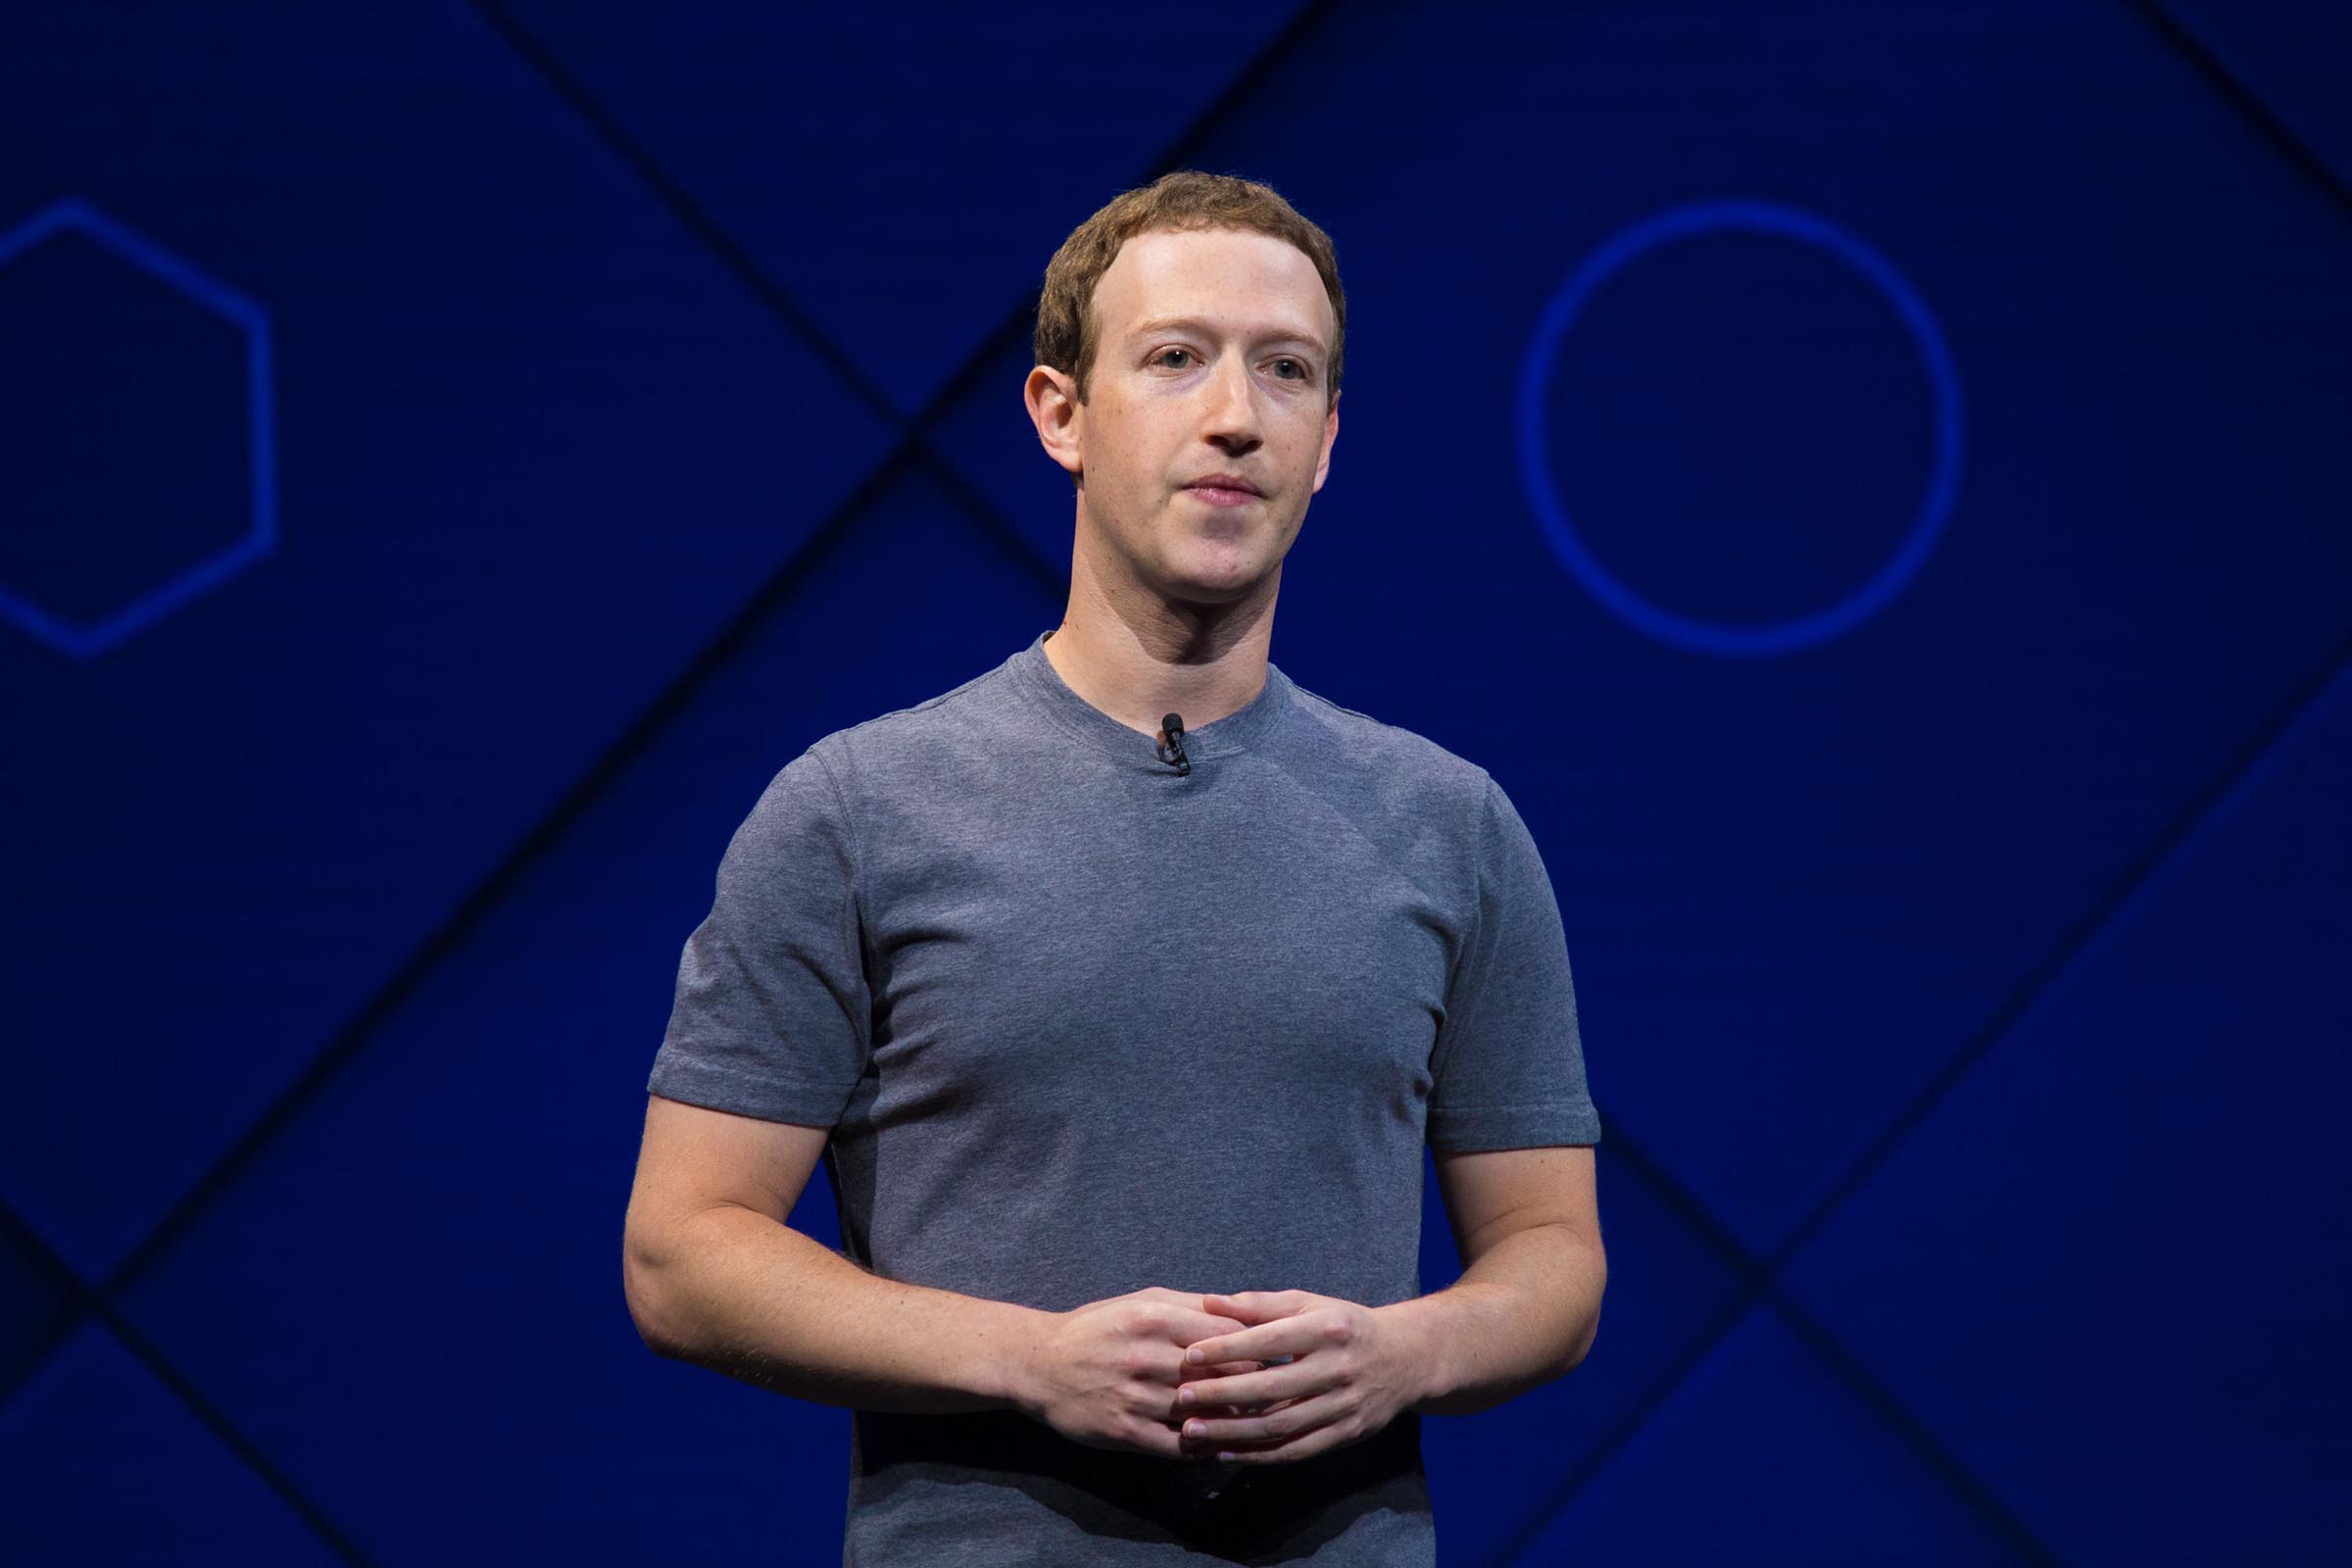 Mark Elliot Zuckerberg é um programador e empresário norte-americano, que ficou conhecido internacionalmente por ser um dos fundadores do Facebook, a rede social mais acessada do mundo.